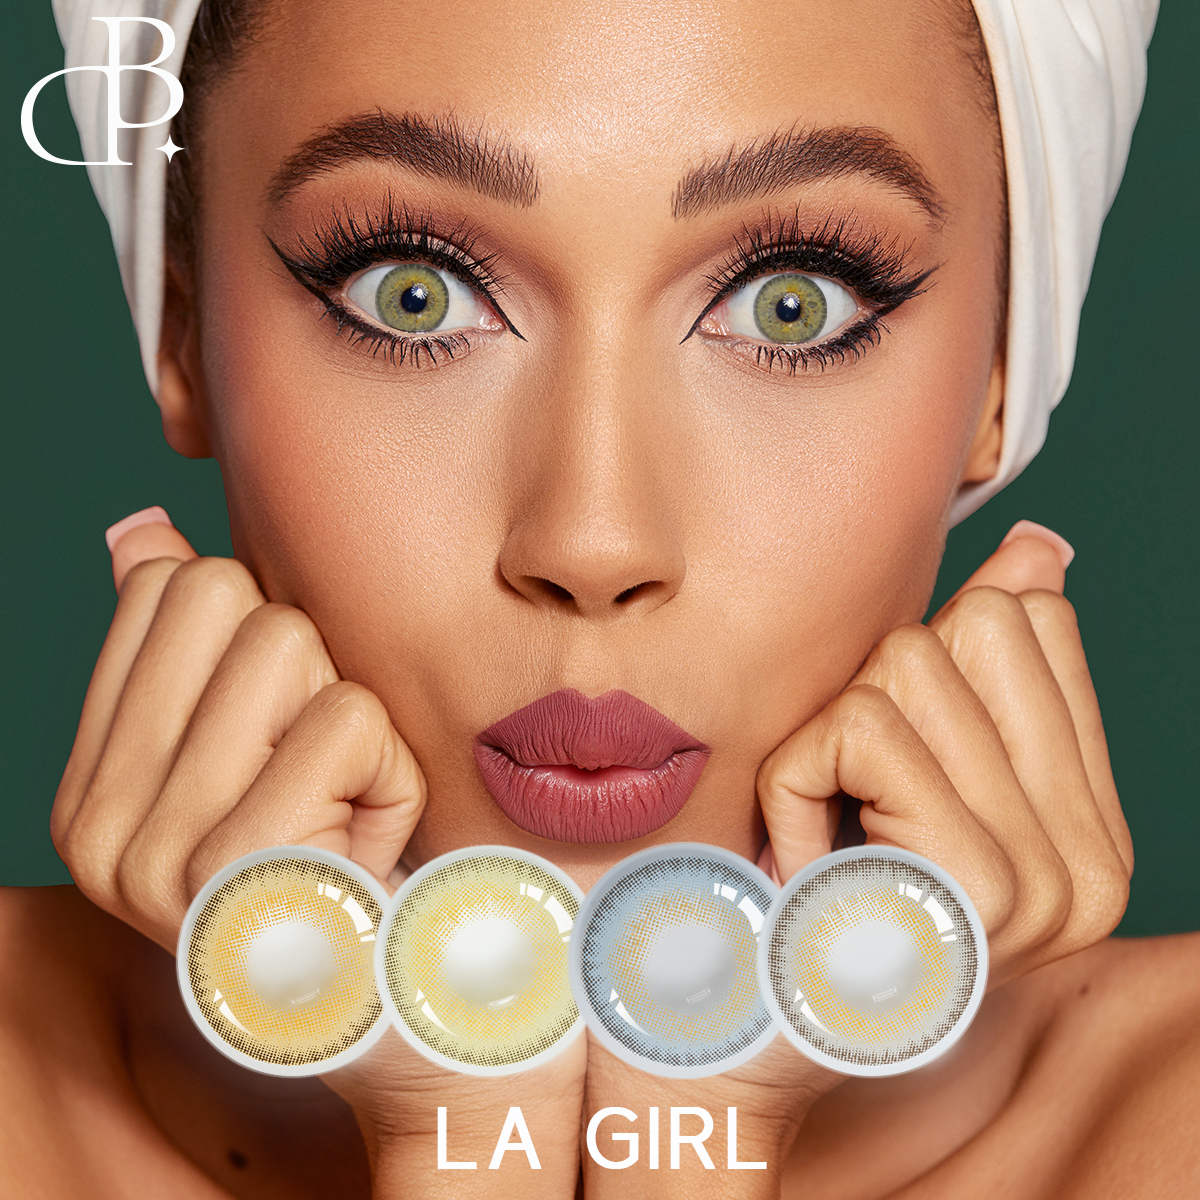 LA GIRL 패션 핫 스타일 도매 컬러 콘택트 렌즈 맞춤형 개인 상표는 고객으로부터 따뜻한 칭찬을 받기 위해 저렴합니다.